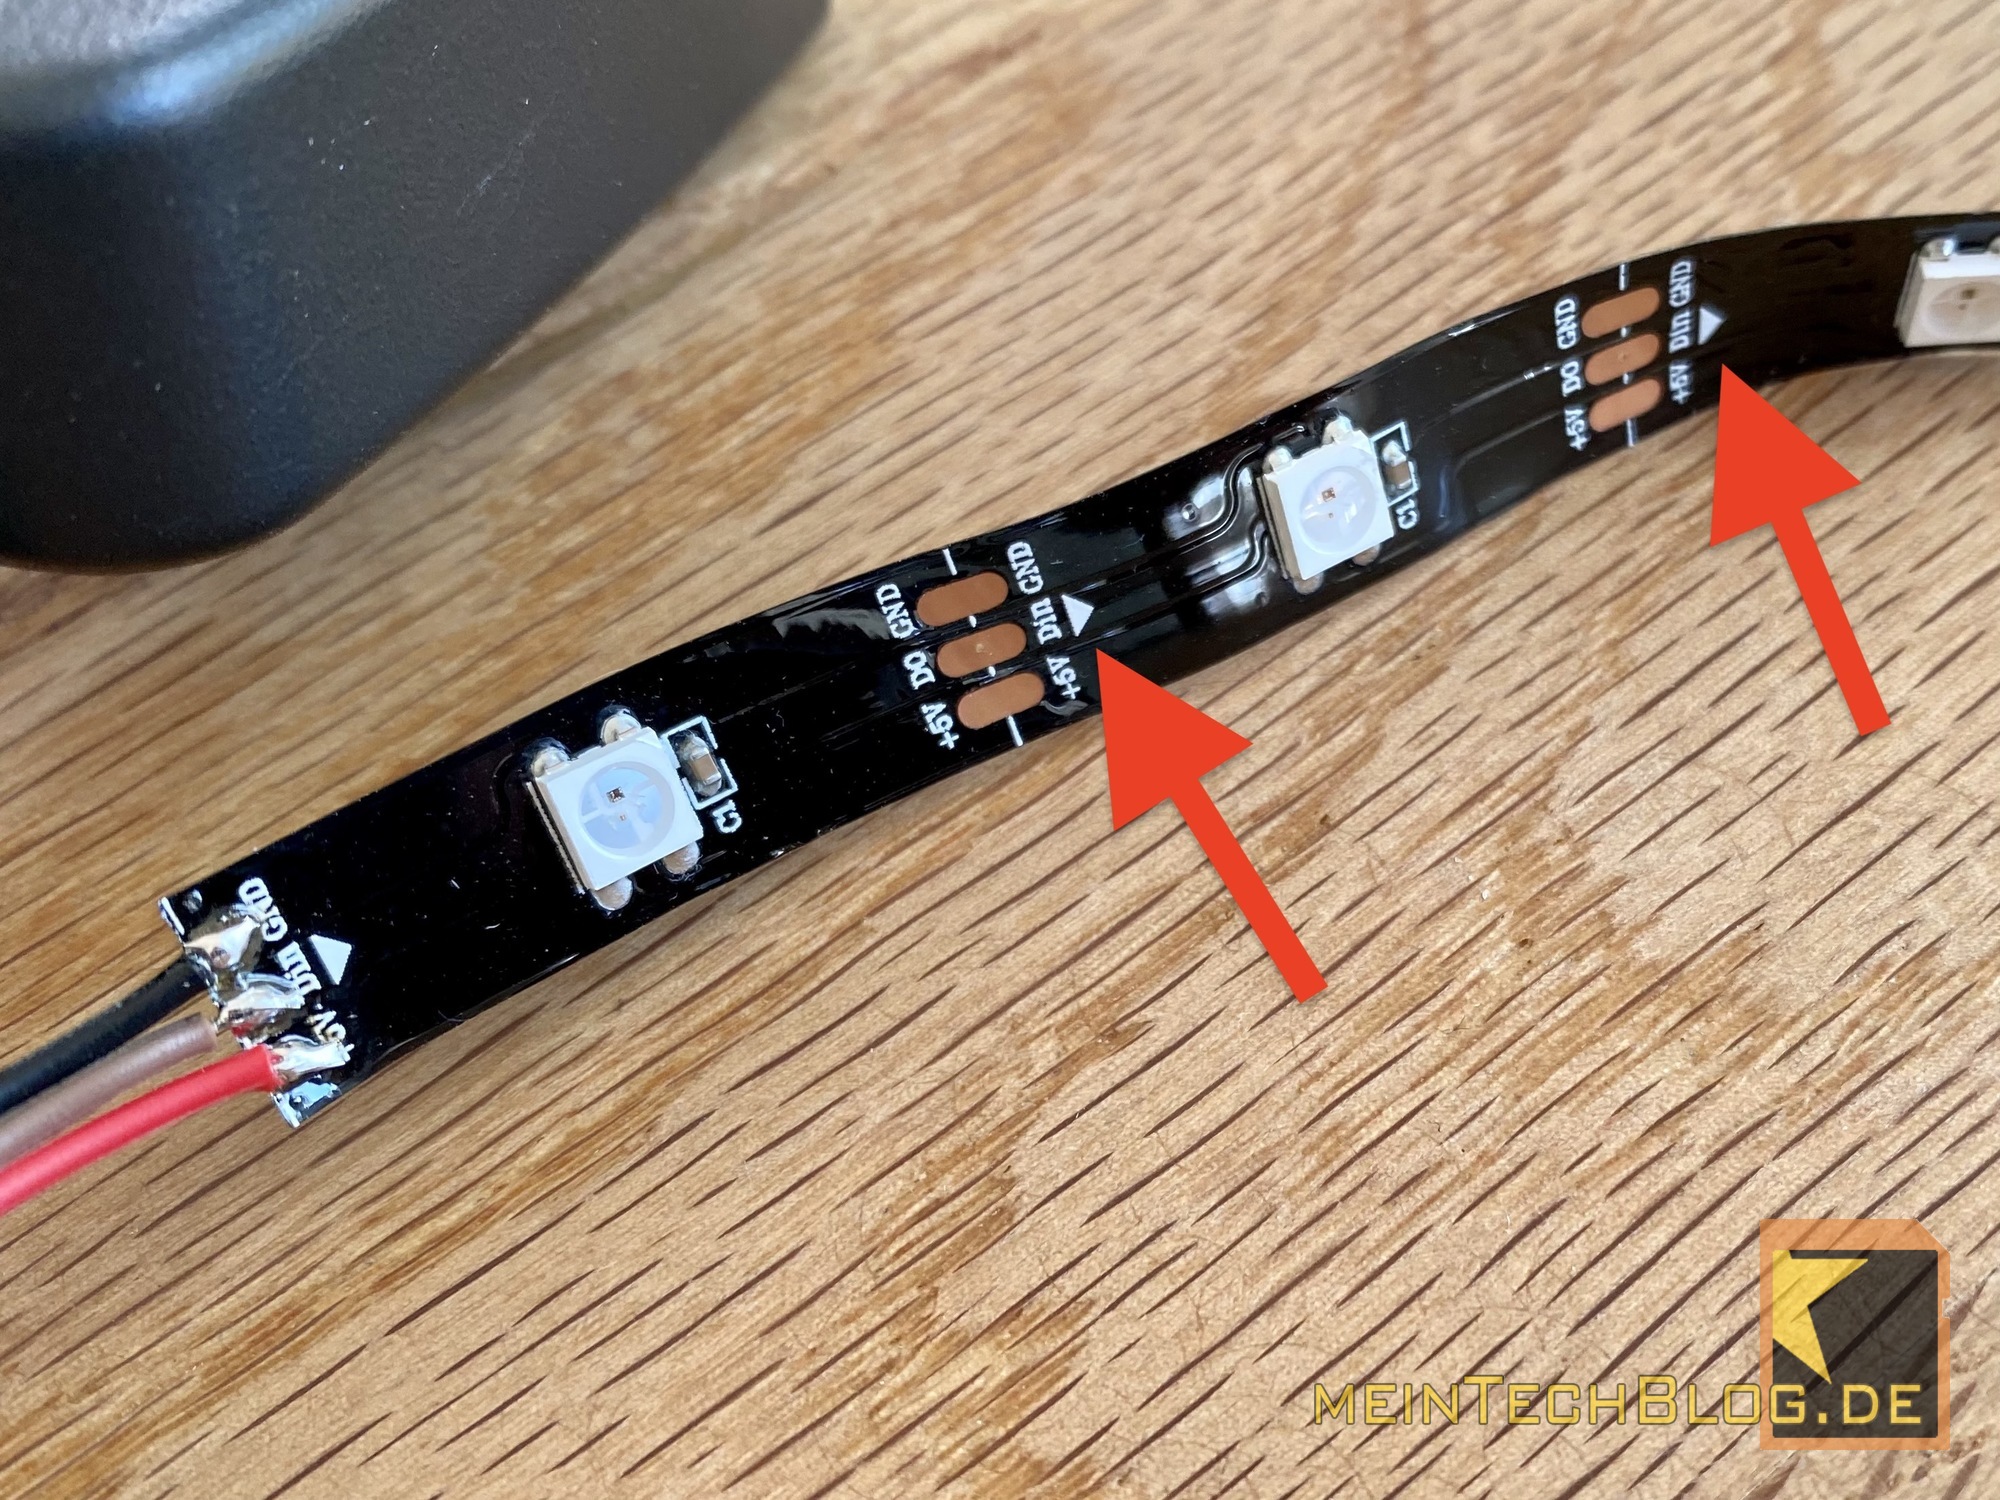 2-adriges Kabel für LED Stripes 2 x 1,5mm² schwarz mit roter Markierung  (Strom & Licht) 